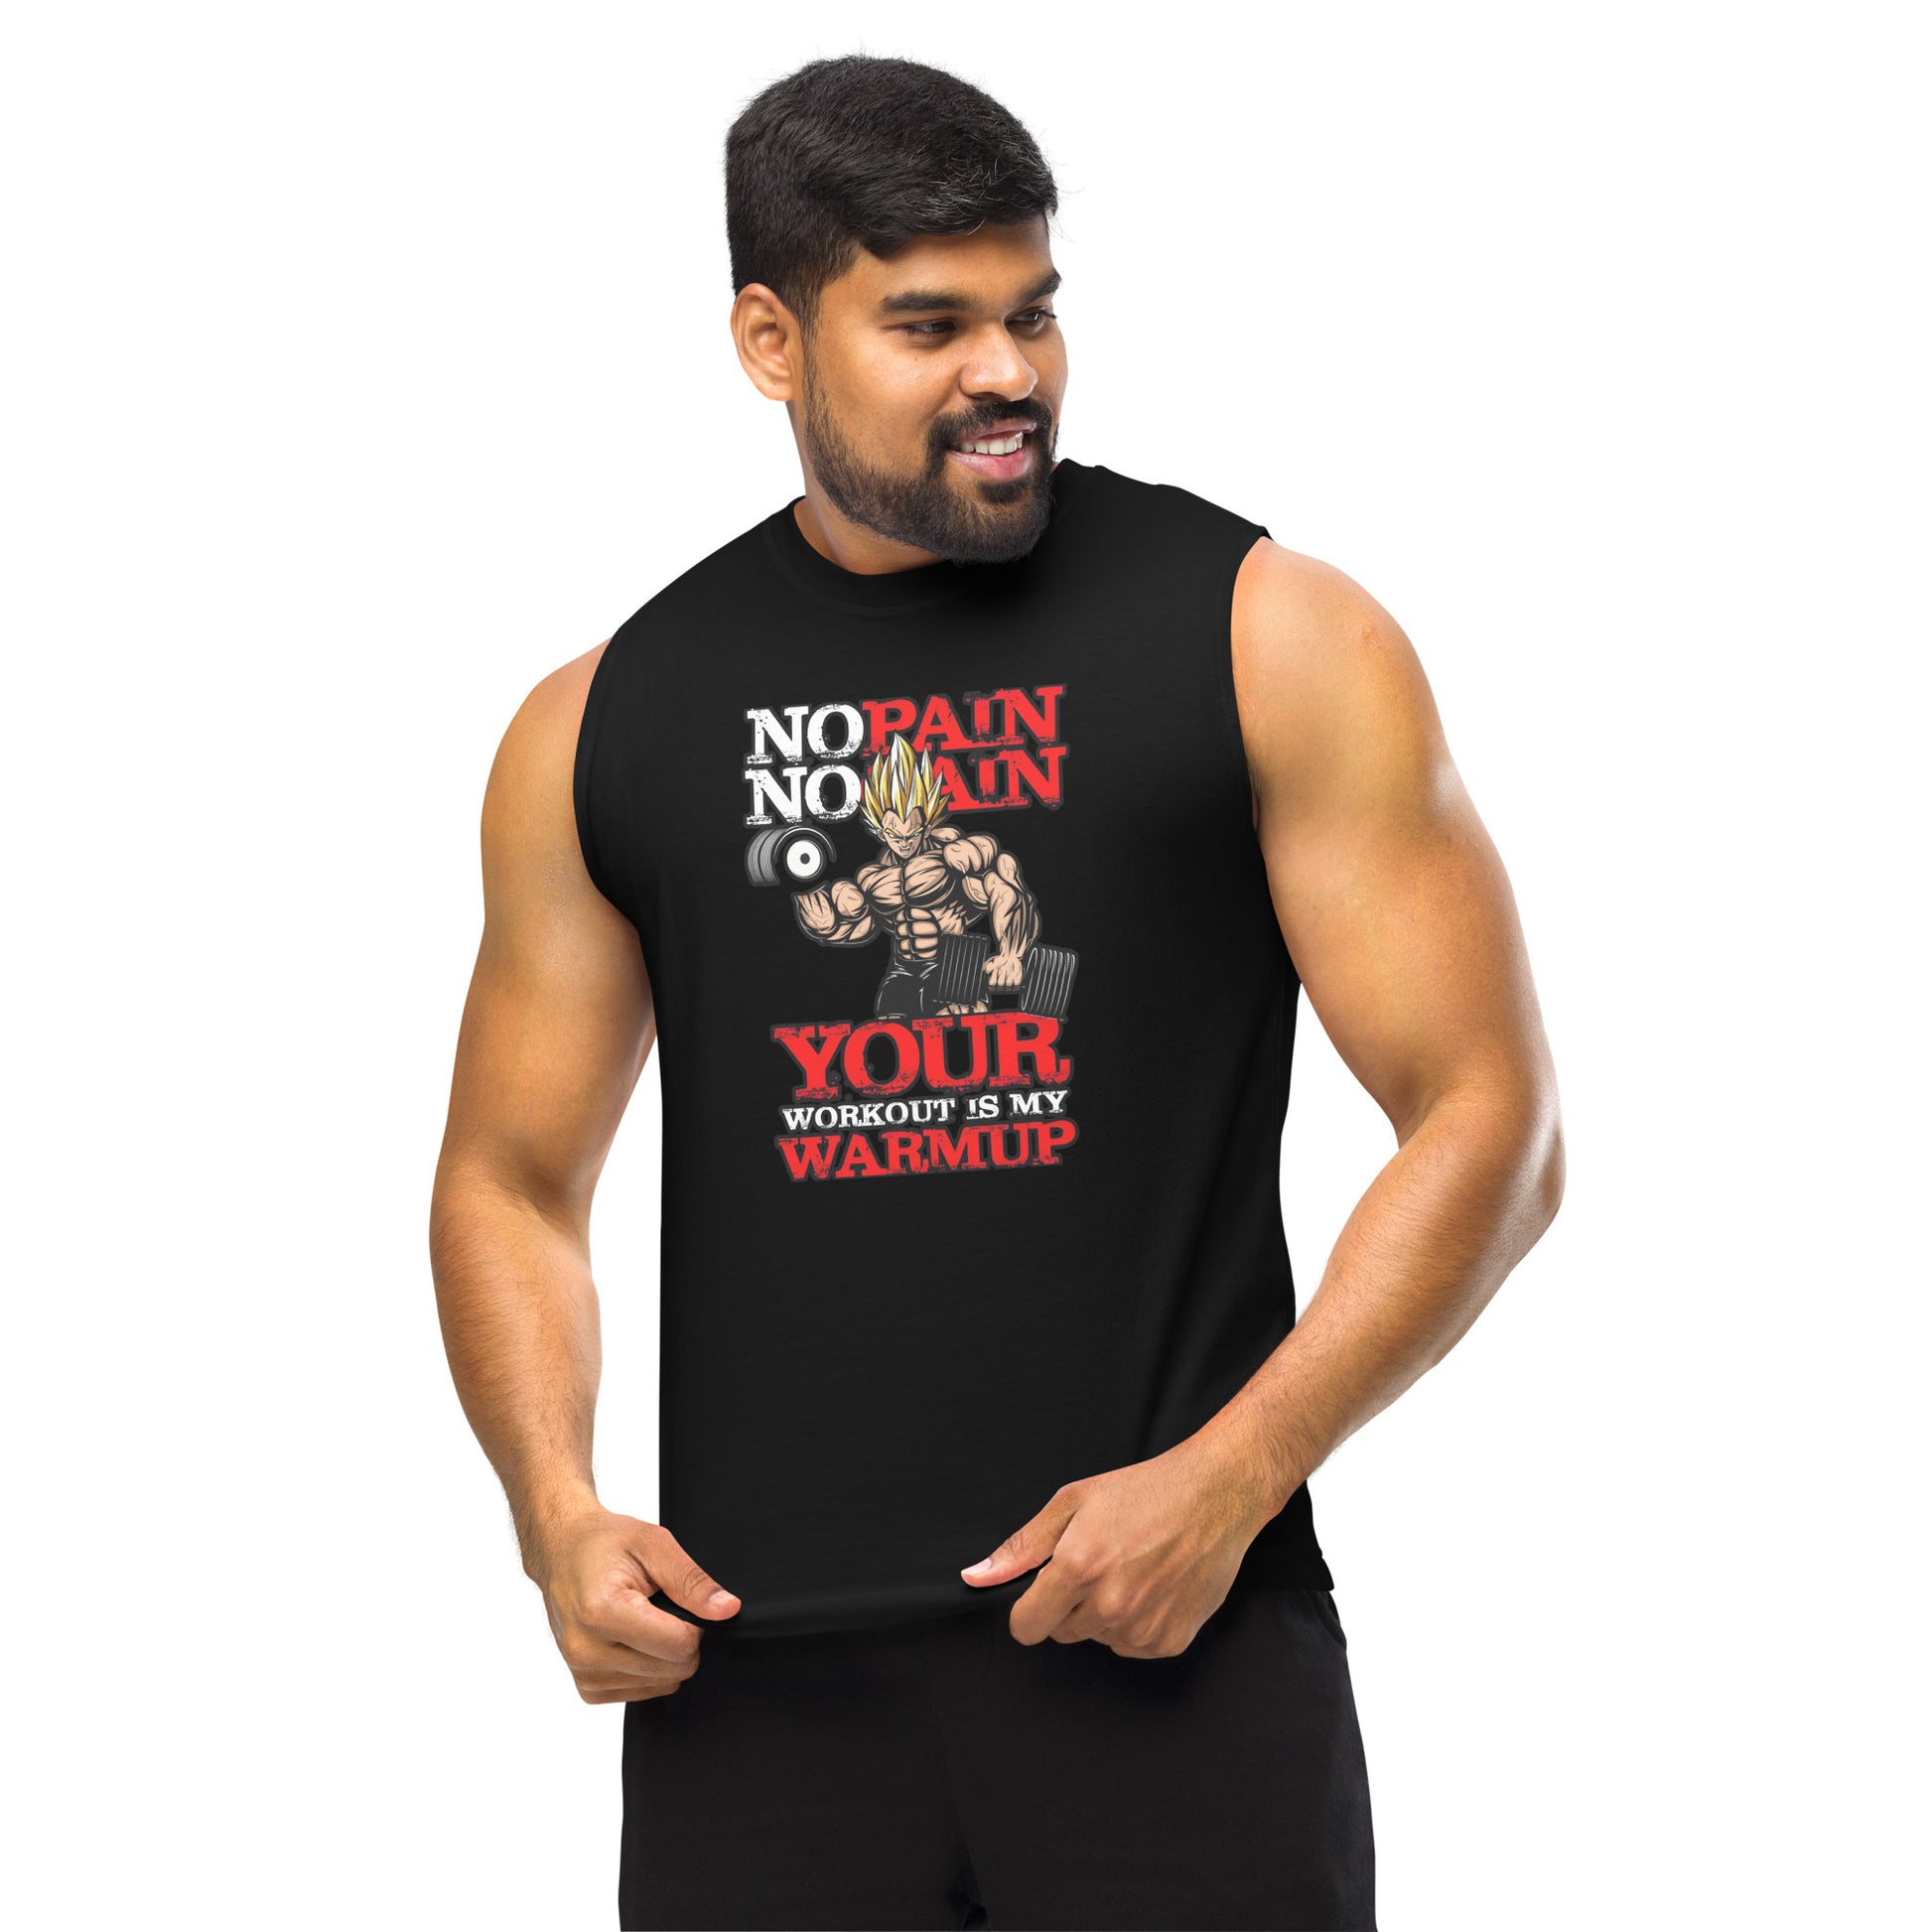 Camiseta sin mangas perfecta para entrenar, No pain Vegeta Gym comprala en línea y experimenta el mejor servicio al cliente. envíos internacionales